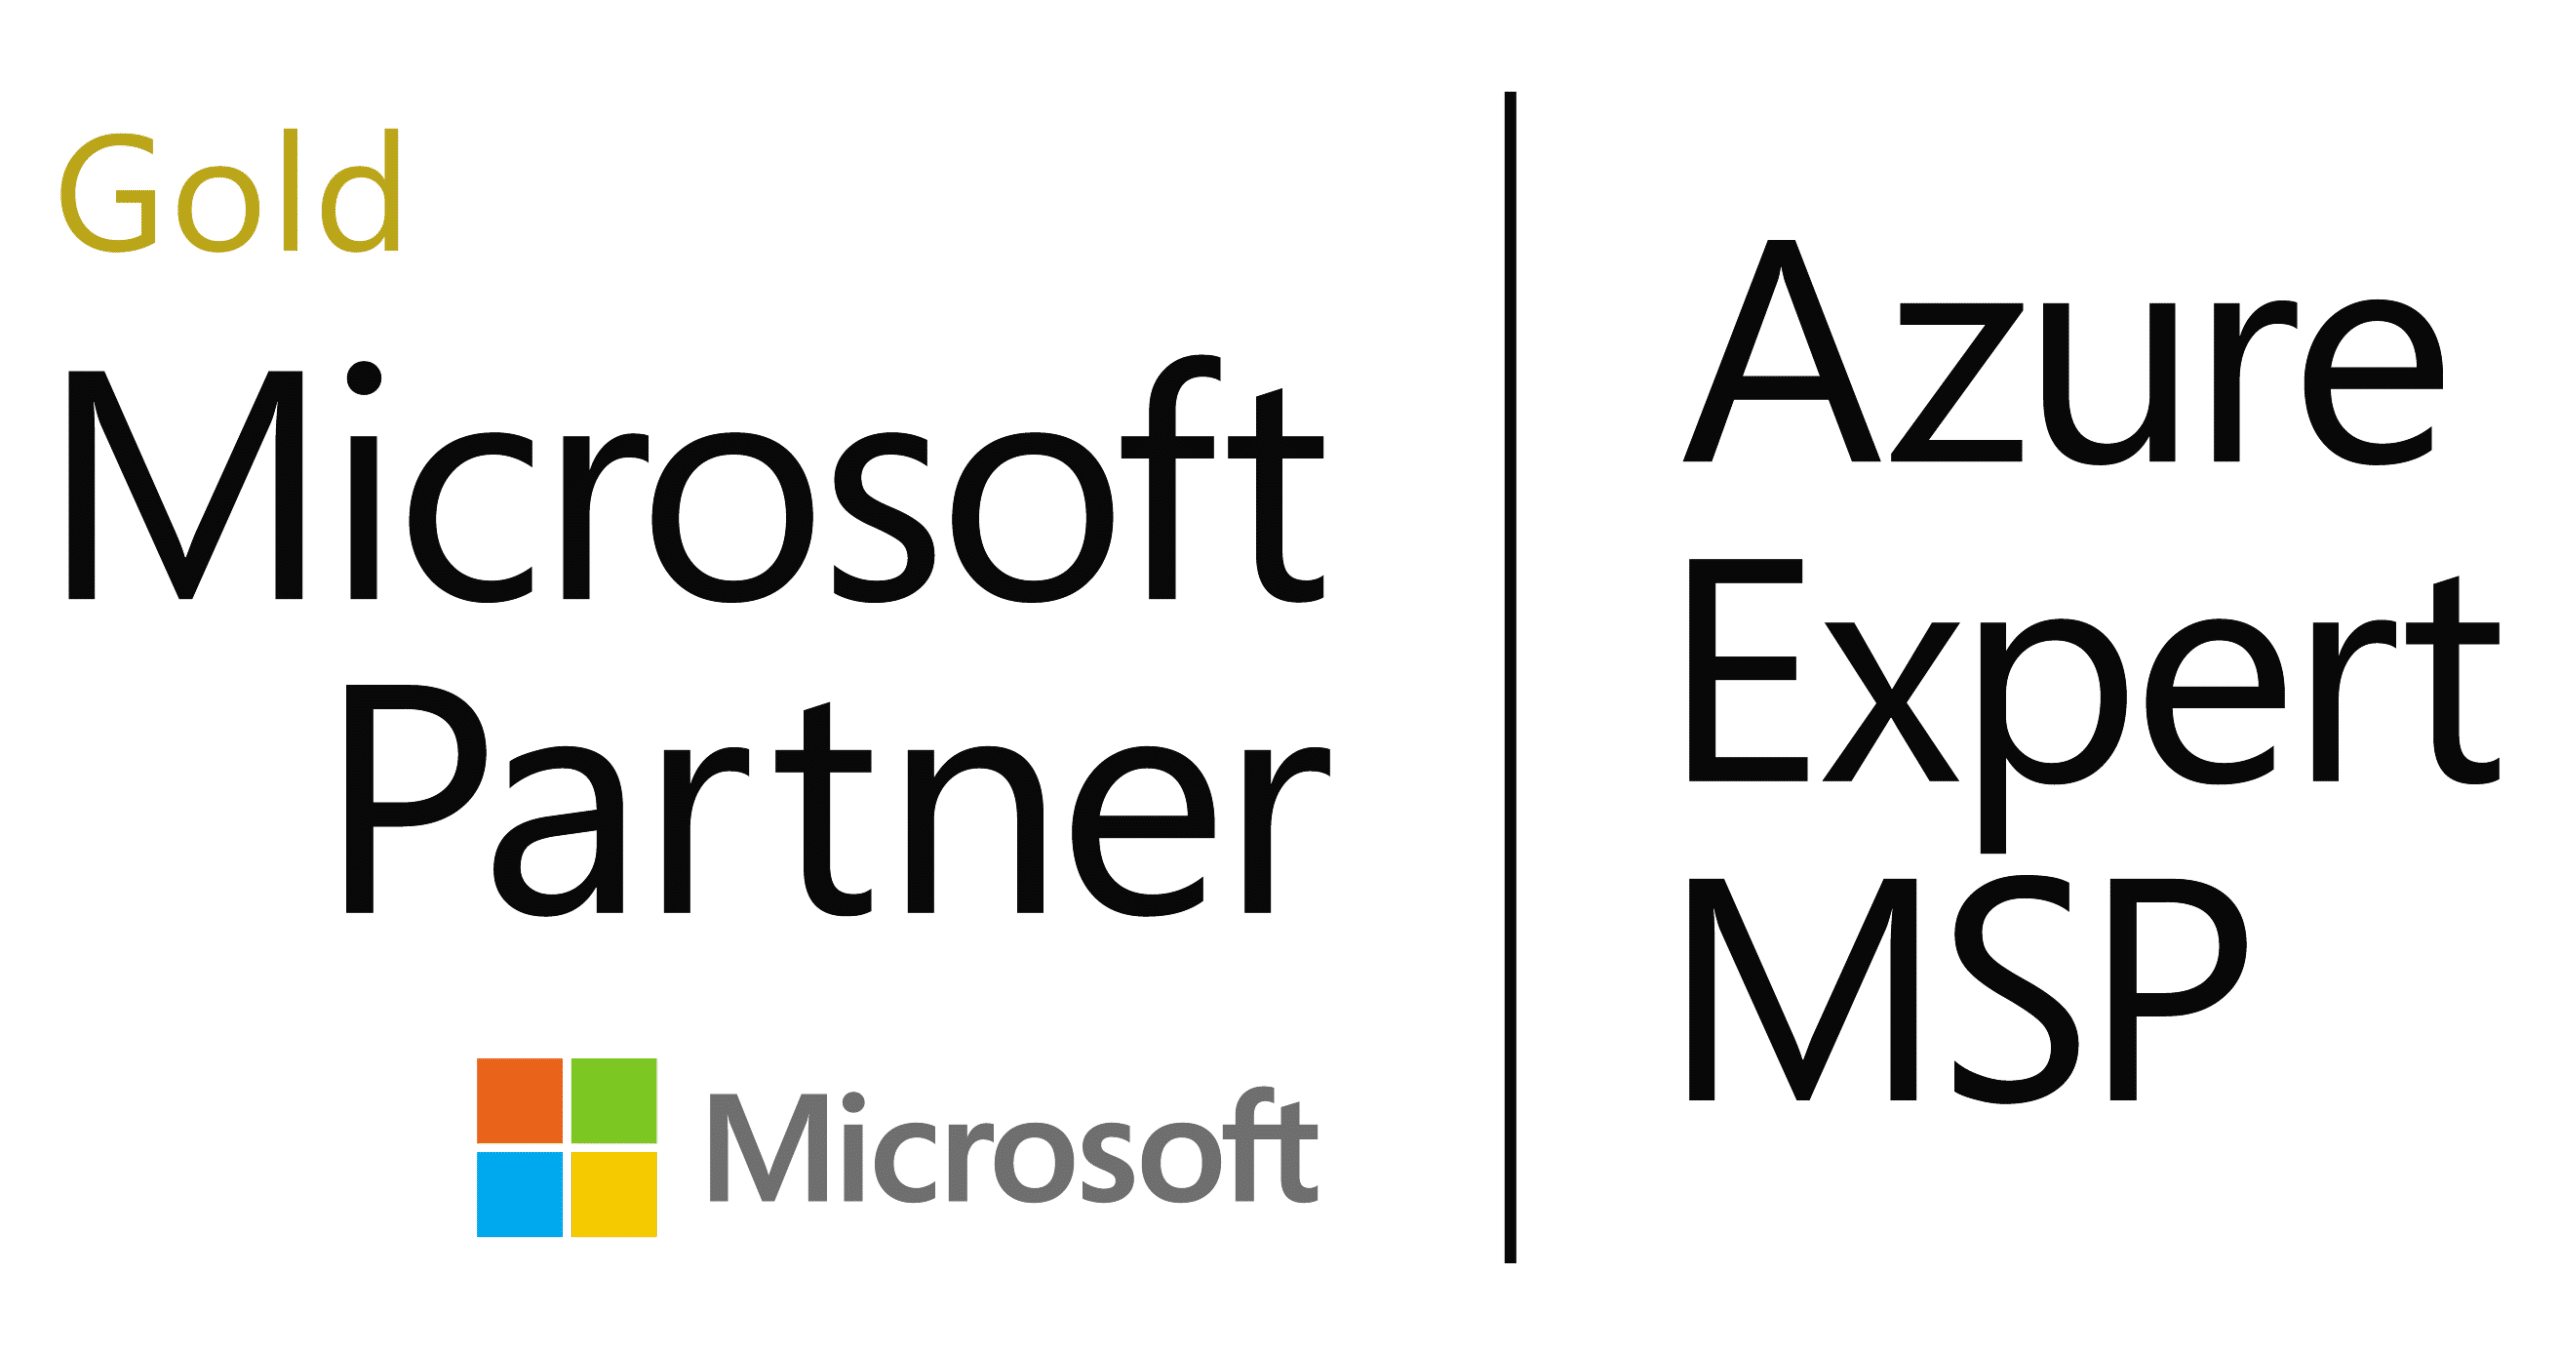 Azure Expert Msp (1)